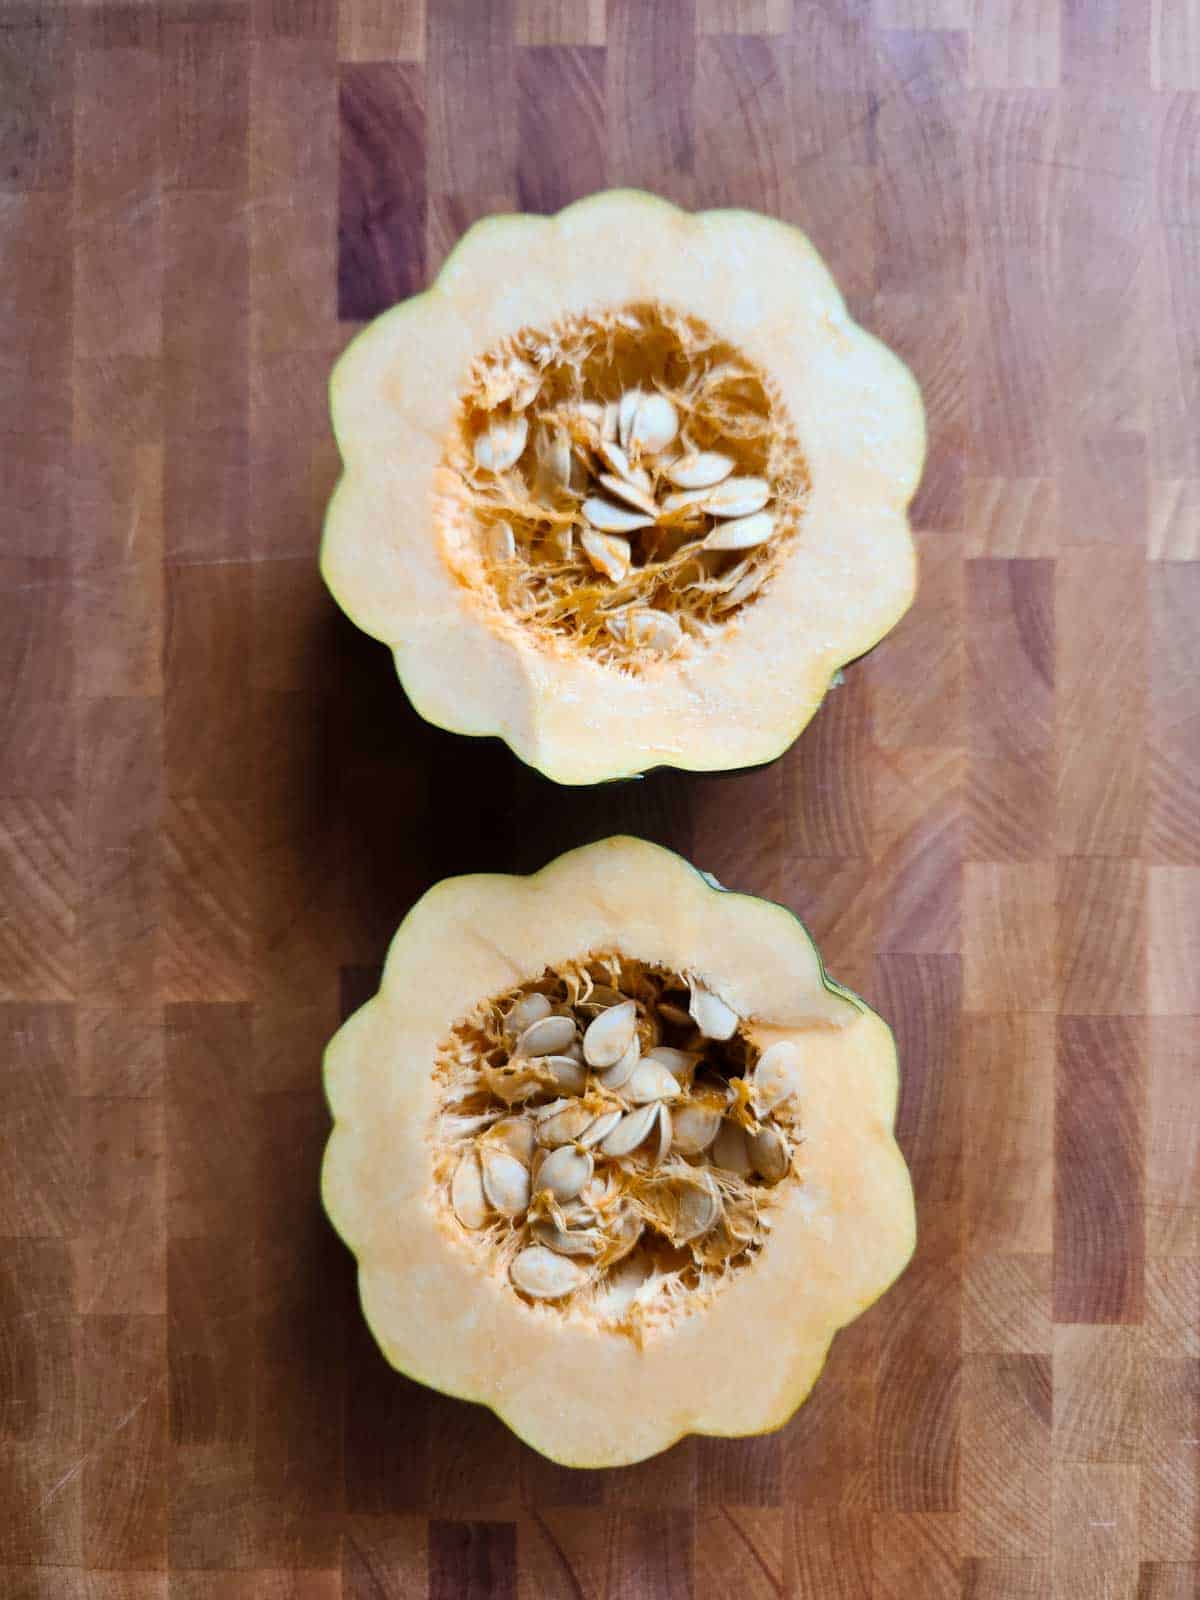 Acorn squash split in half on a cutting board.